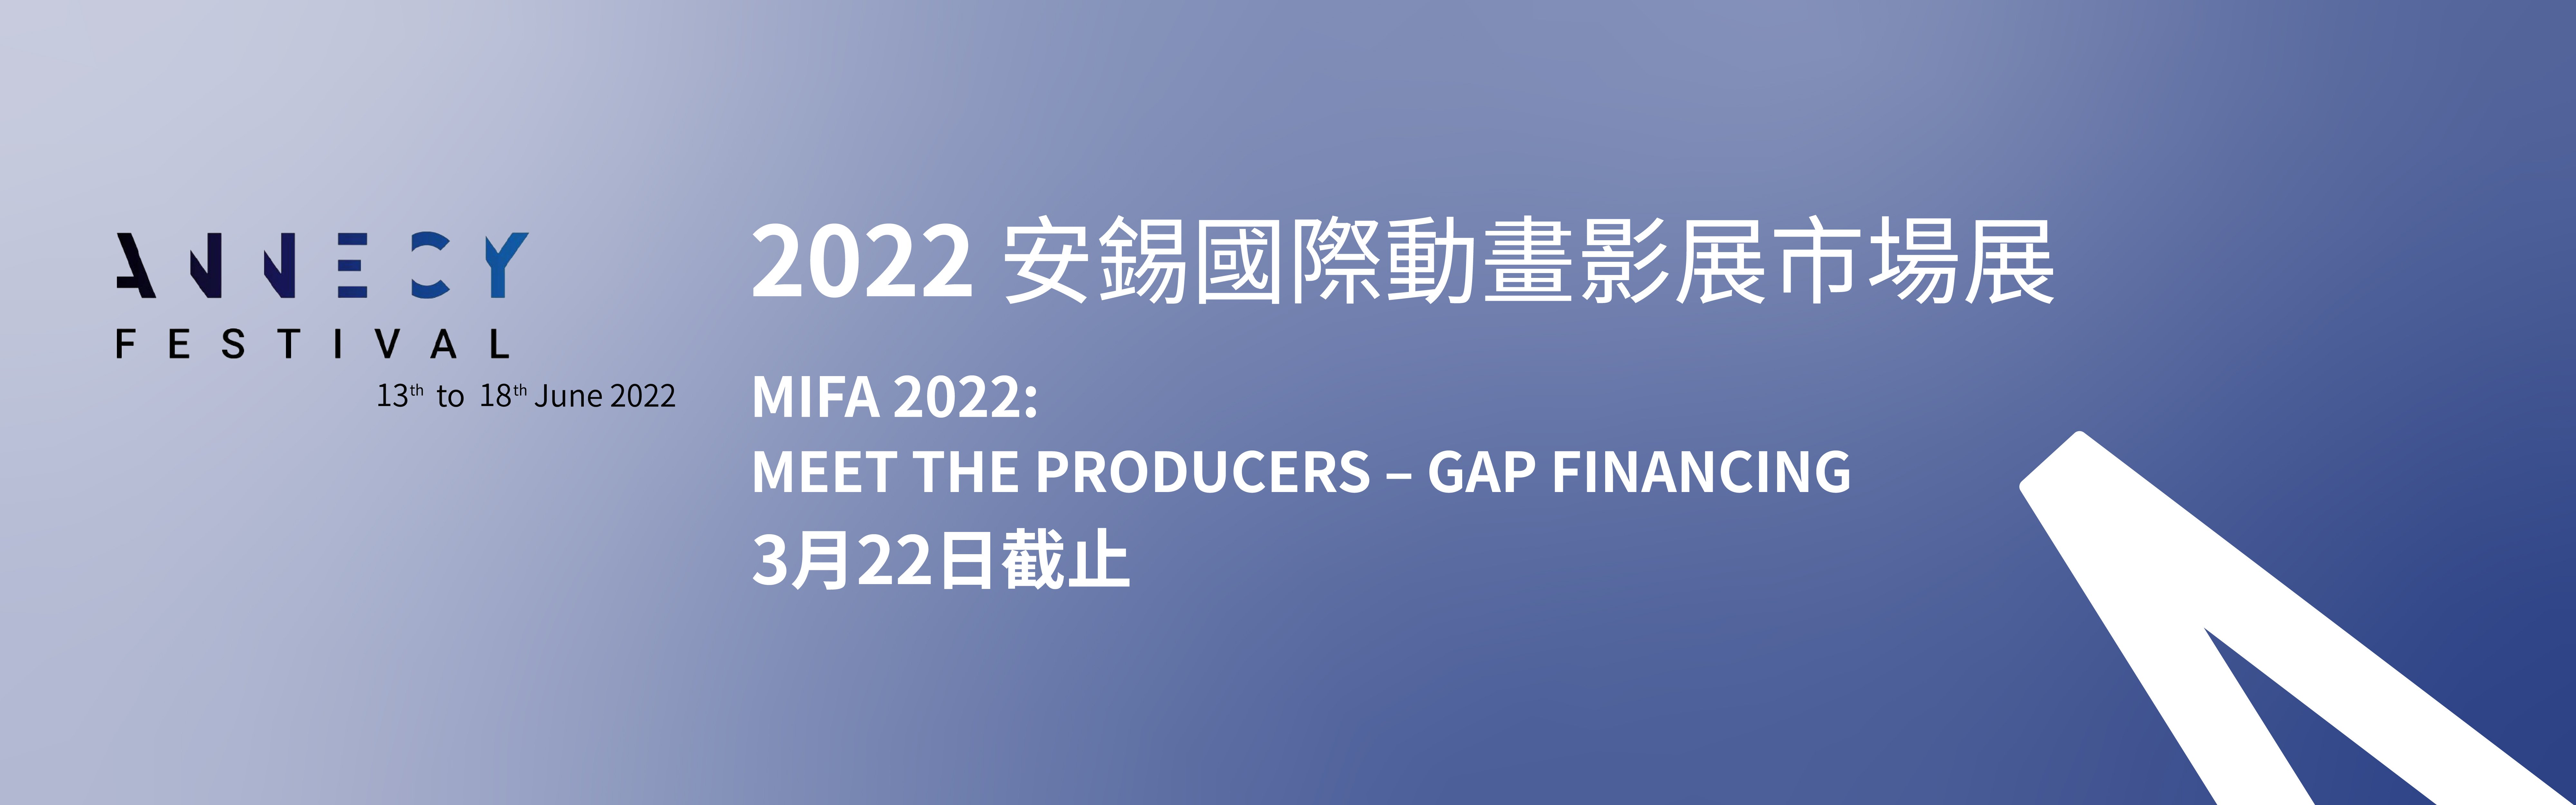 「2022 安錫國際動畫影展與市場展」 MEET THE PRODUCERS – GAP FINANCING（已截止）